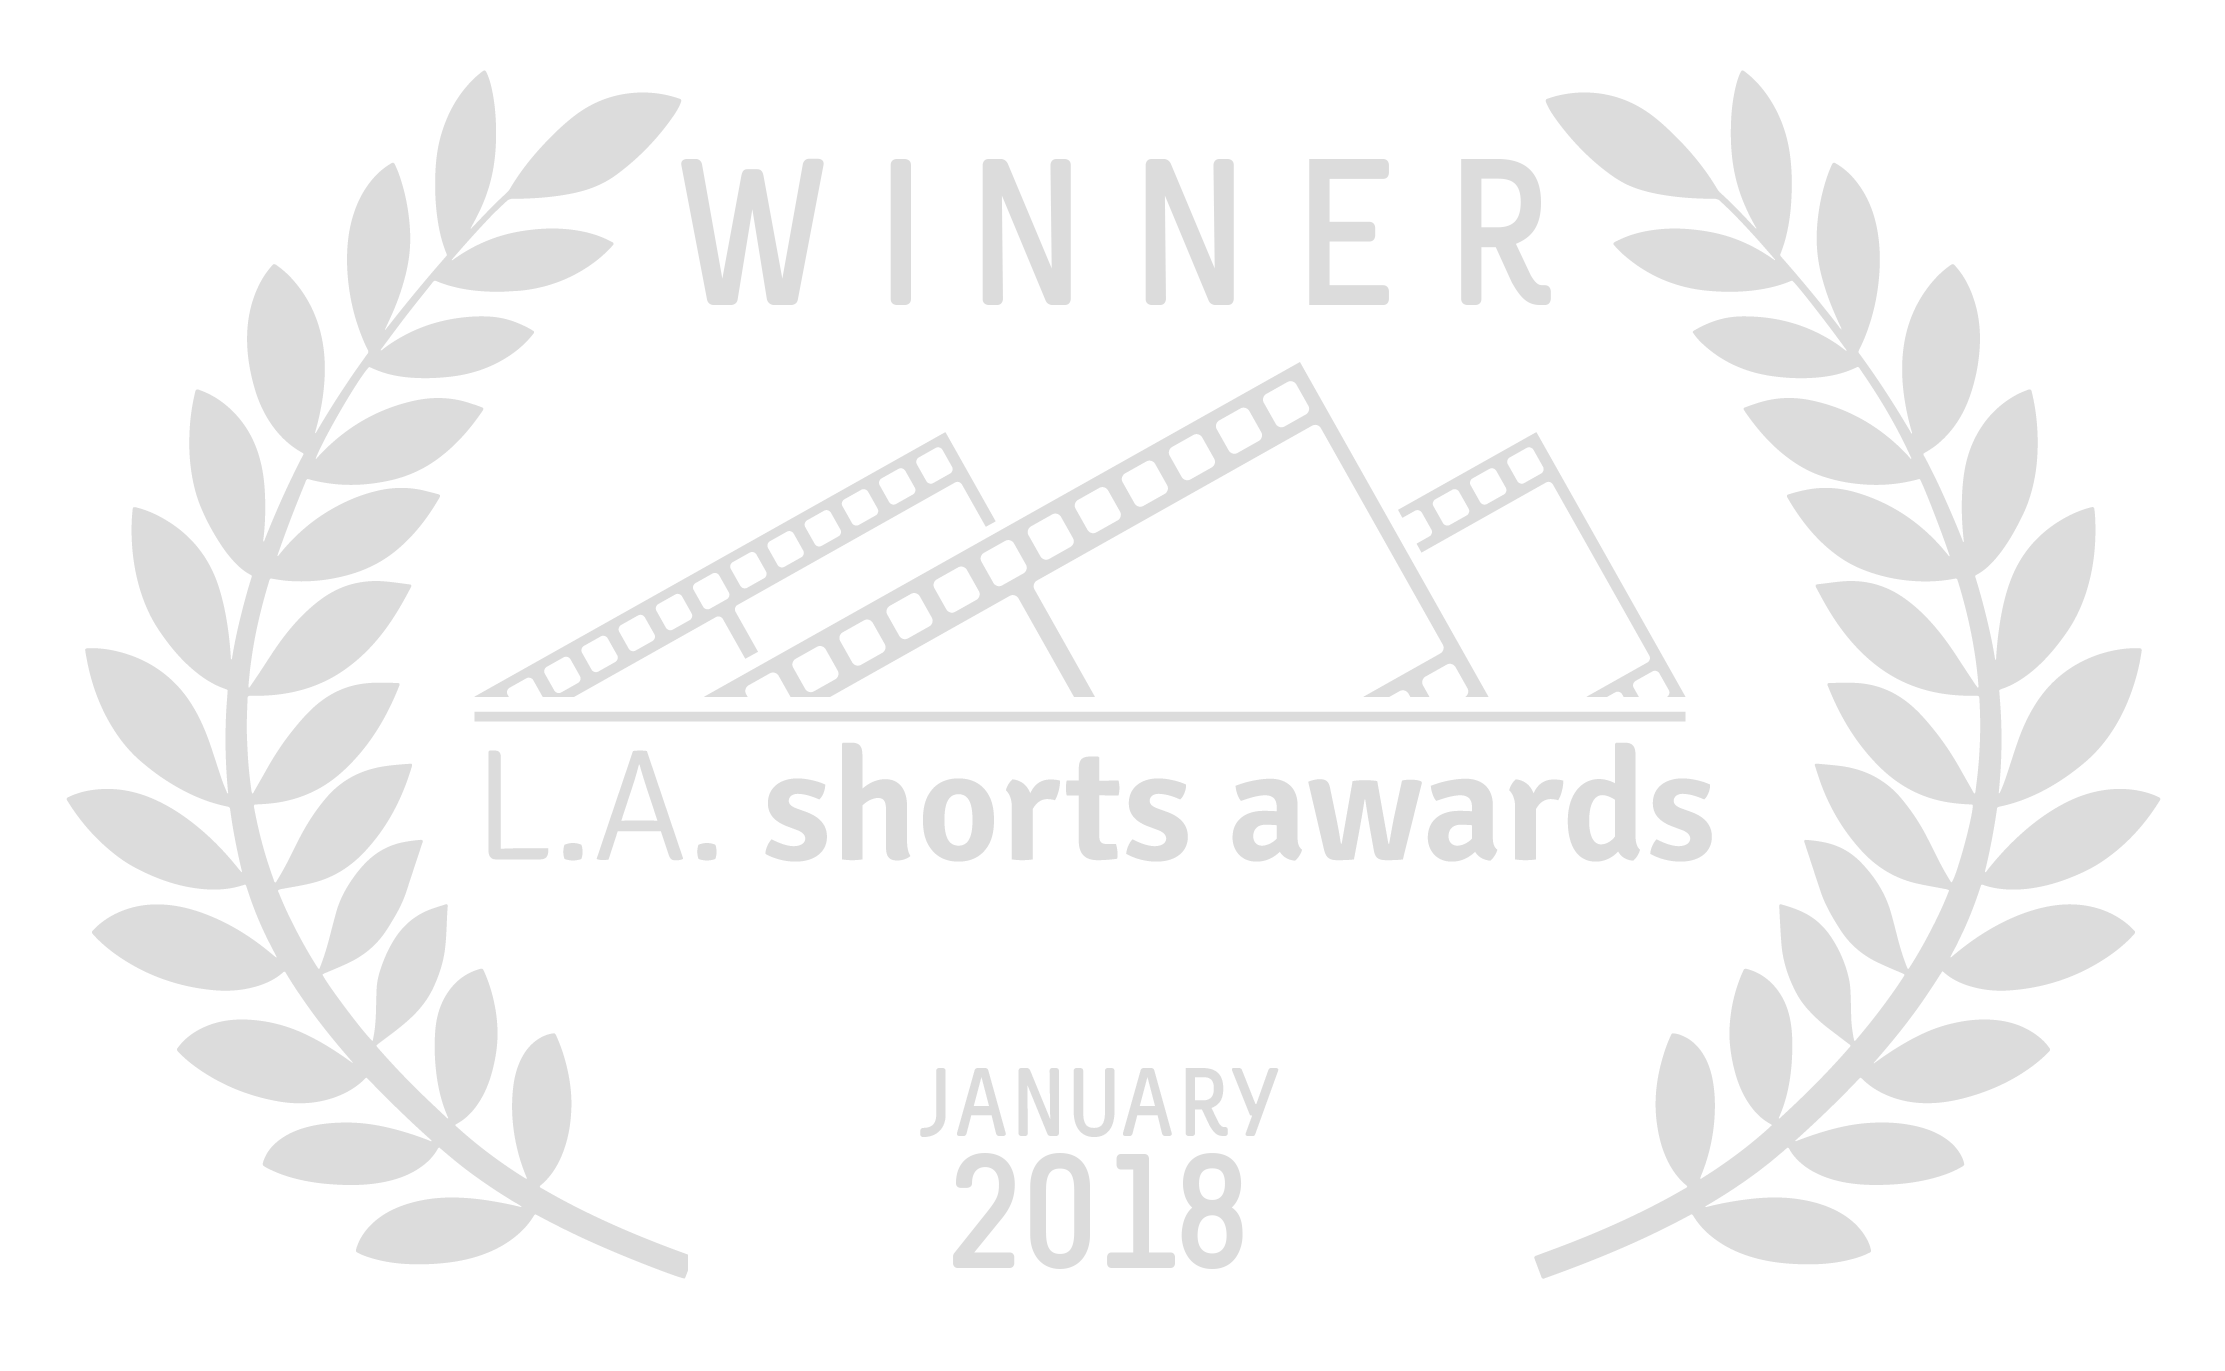 LA Shorts Awards Winner